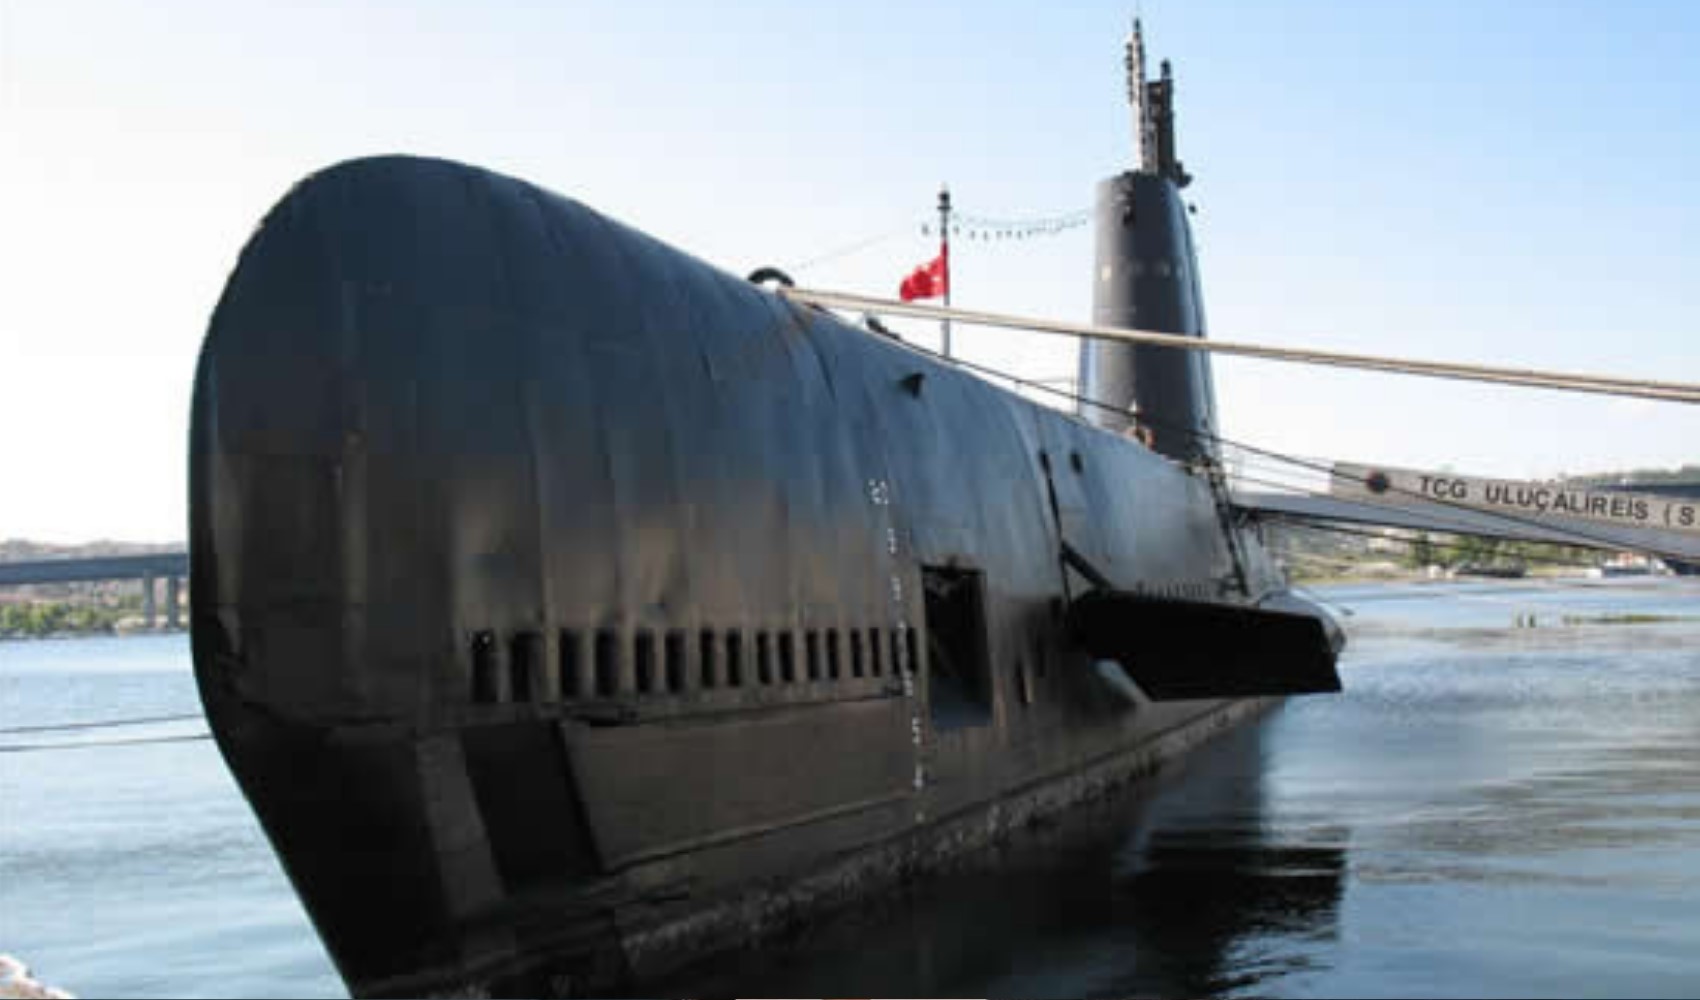 Türkiye'nin ilk denizaltı müzesi 'TCG Uluçalireis' kapılarını 18 Mart'ta ziyaretçilerine açacak